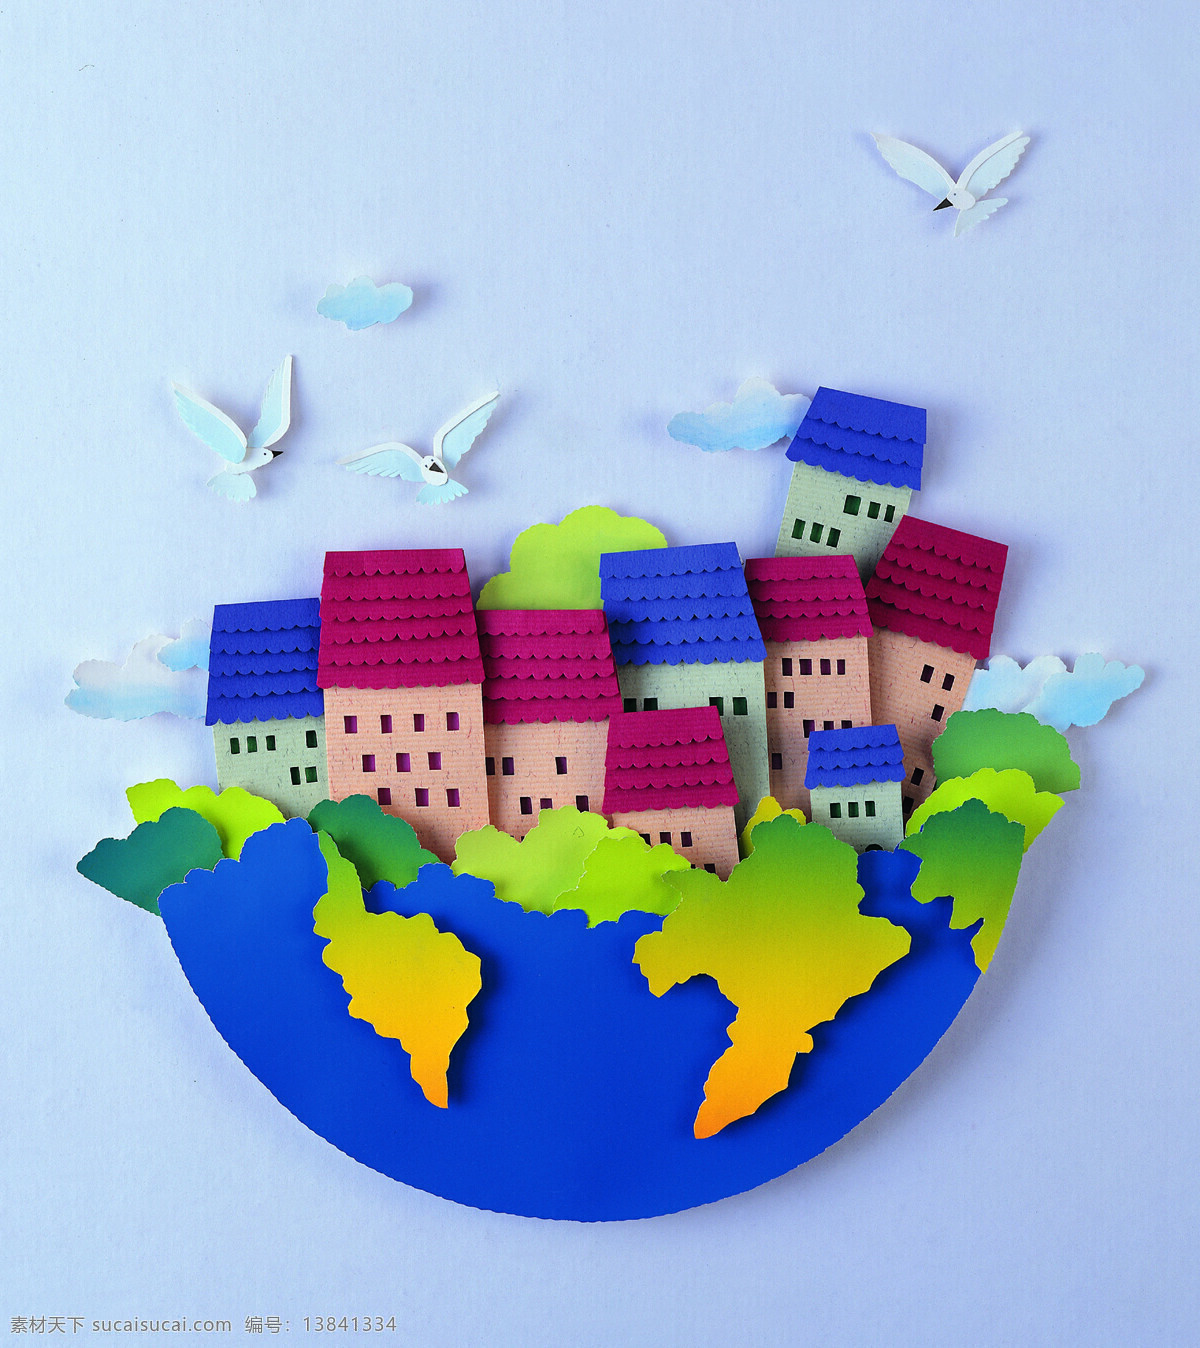 创意地球纸雕 和平 保护地球 环保 蓝色